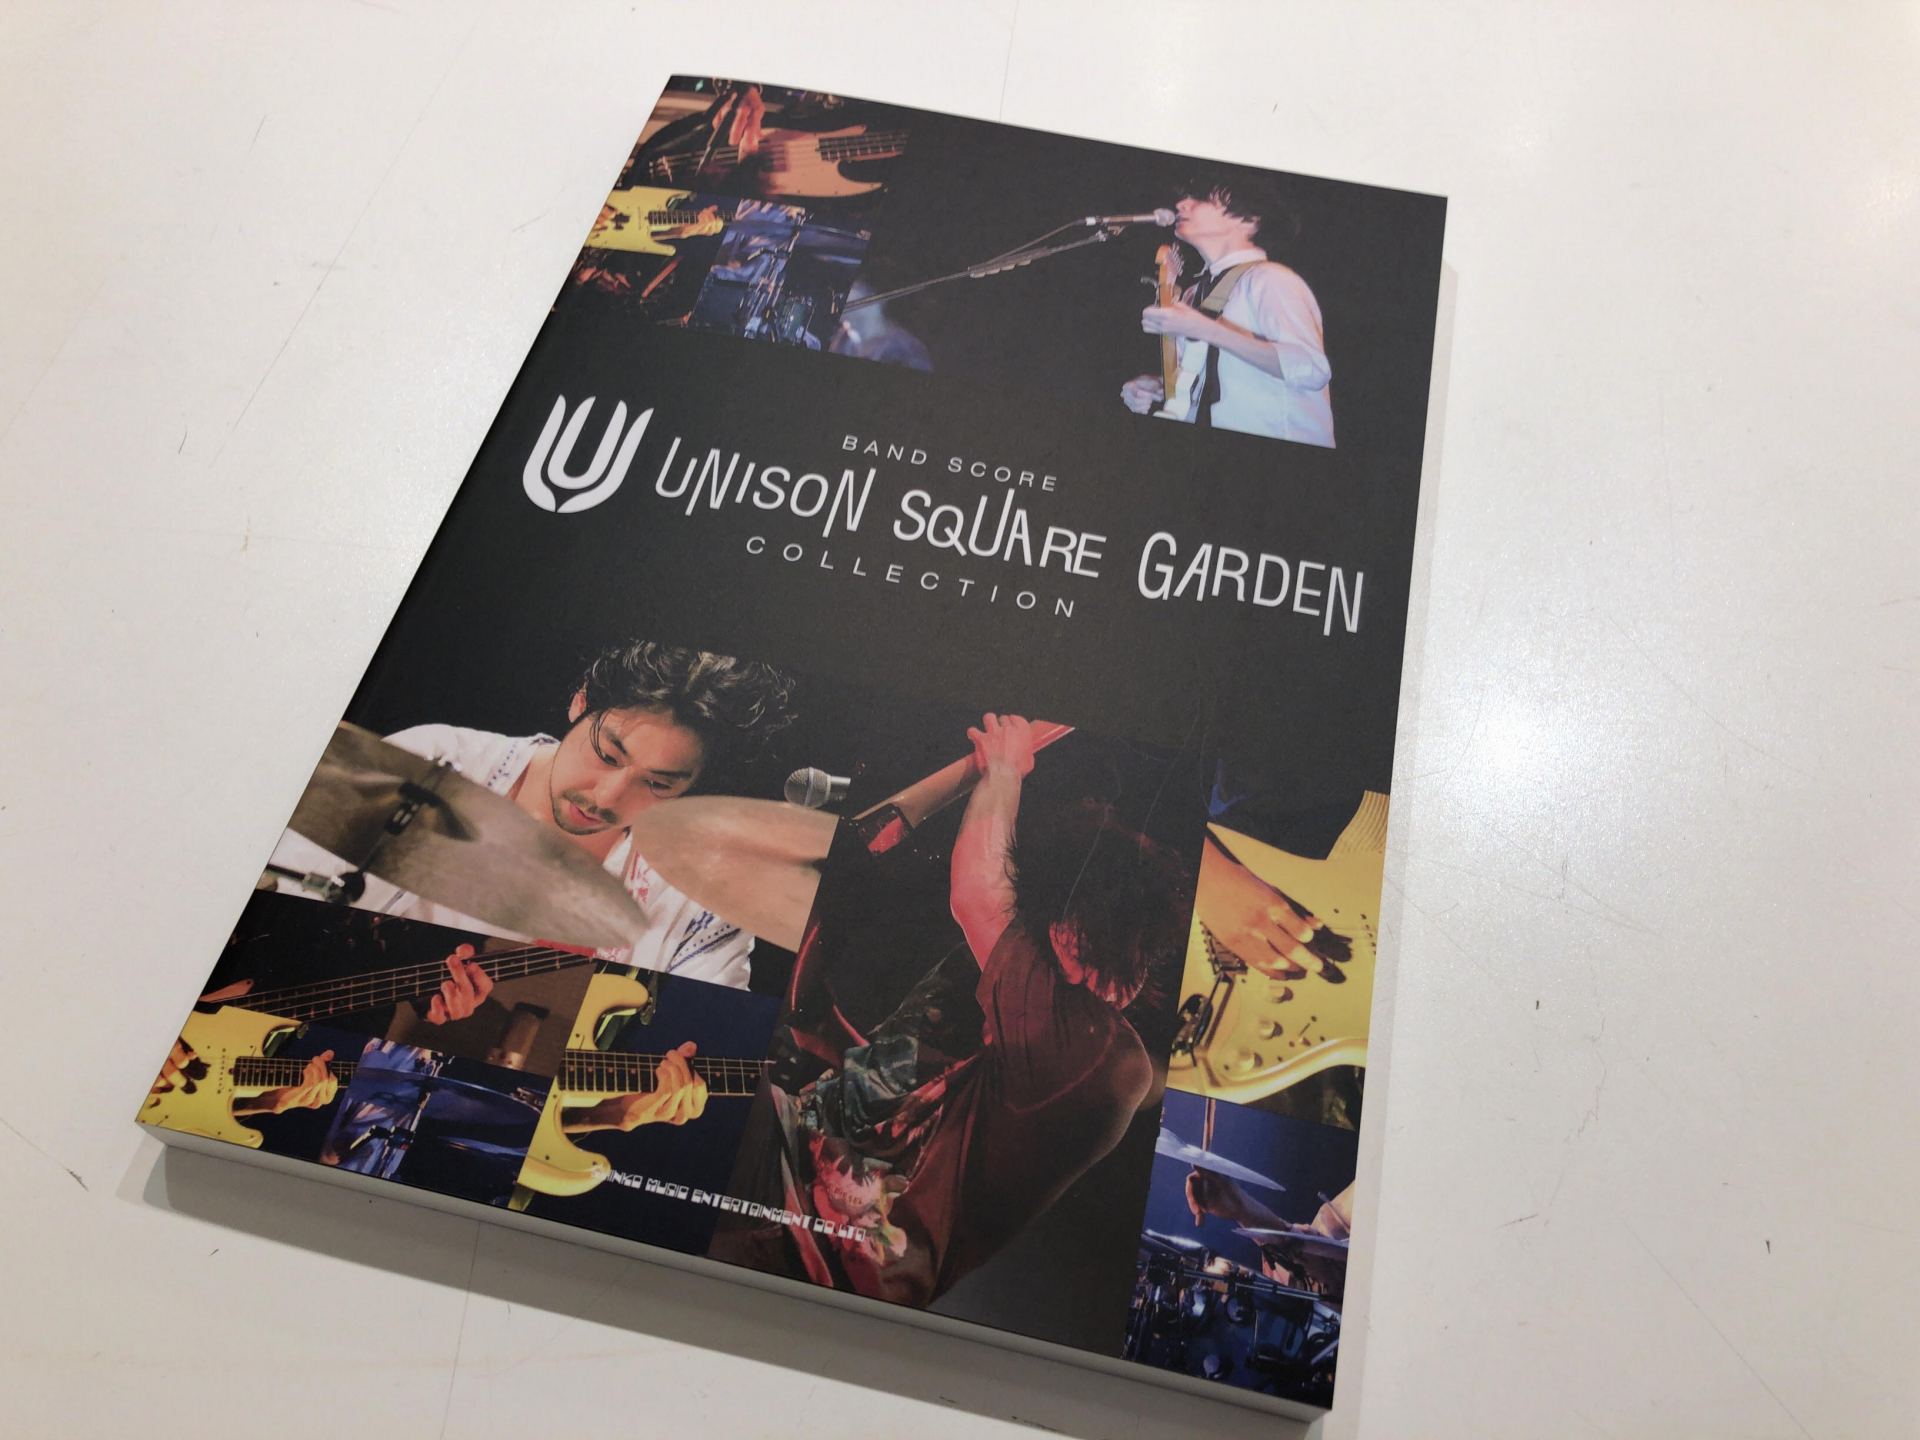 バンドスコア Unison Square Garden Collection が入荷しました イオンモール広島祗園店 店舗情報 島村楽器